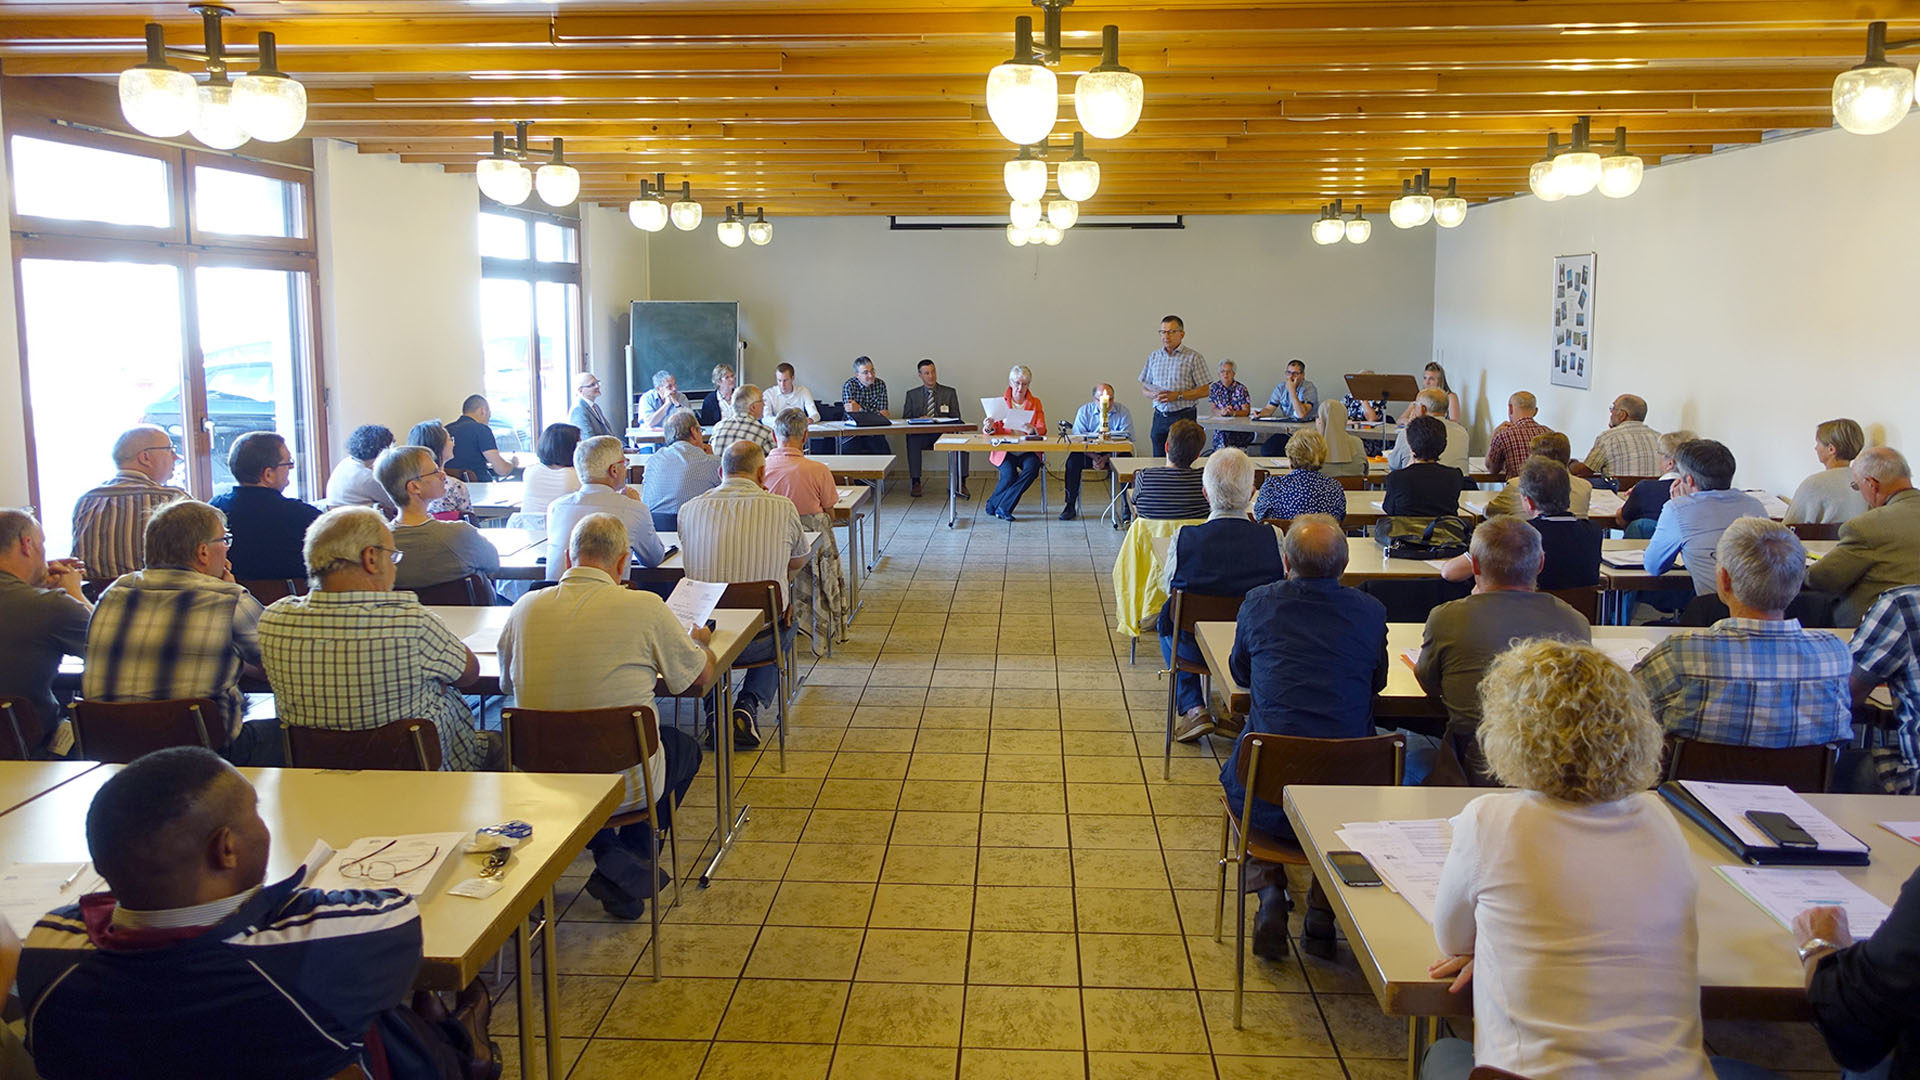 L'assemblée de la Communauté ecclésiastique cantonale s'est tenue à Saignelégier. (Photo: SCJP)